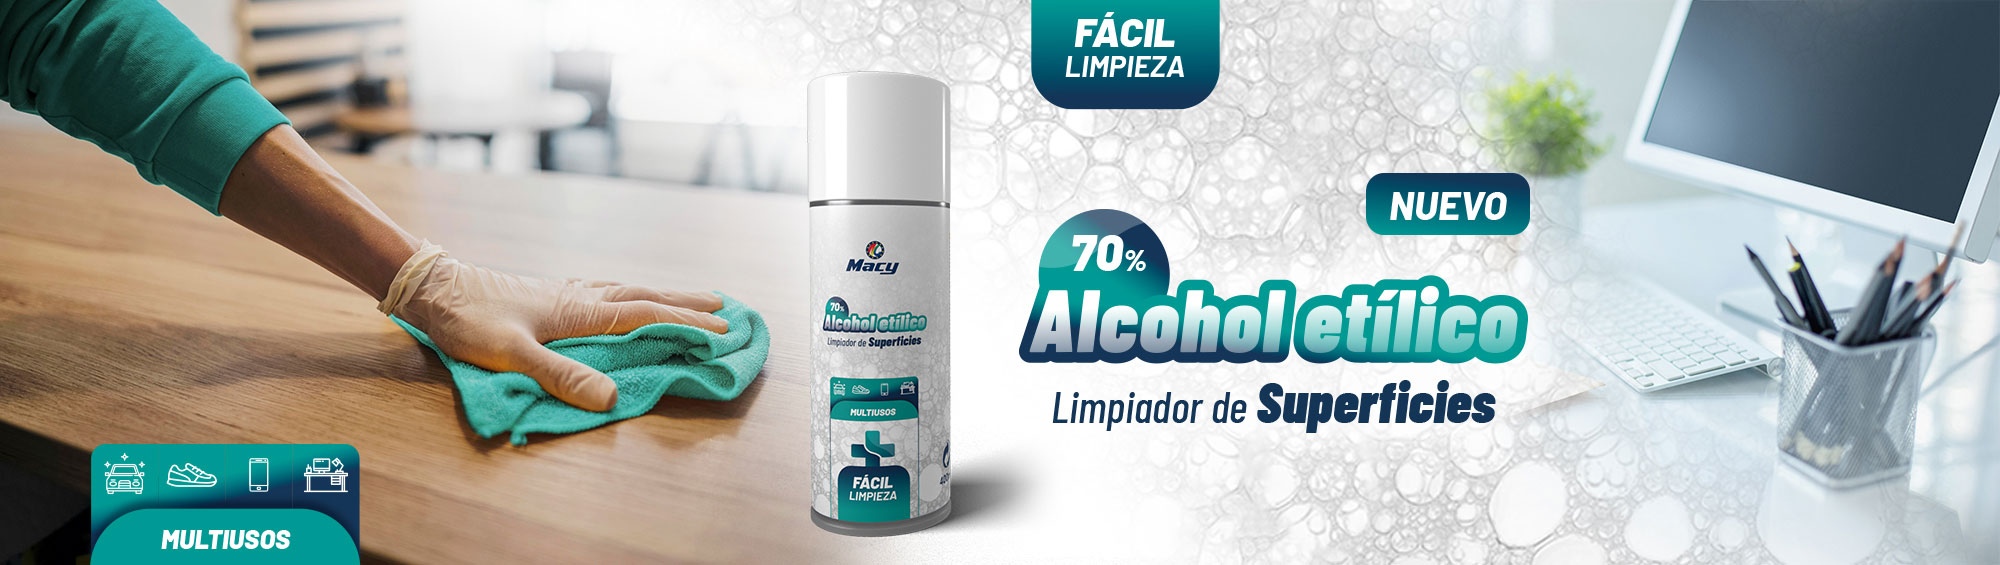 LIMPIADOR DE SUPERFICIES ALCOHOL ETÃLICO 70%